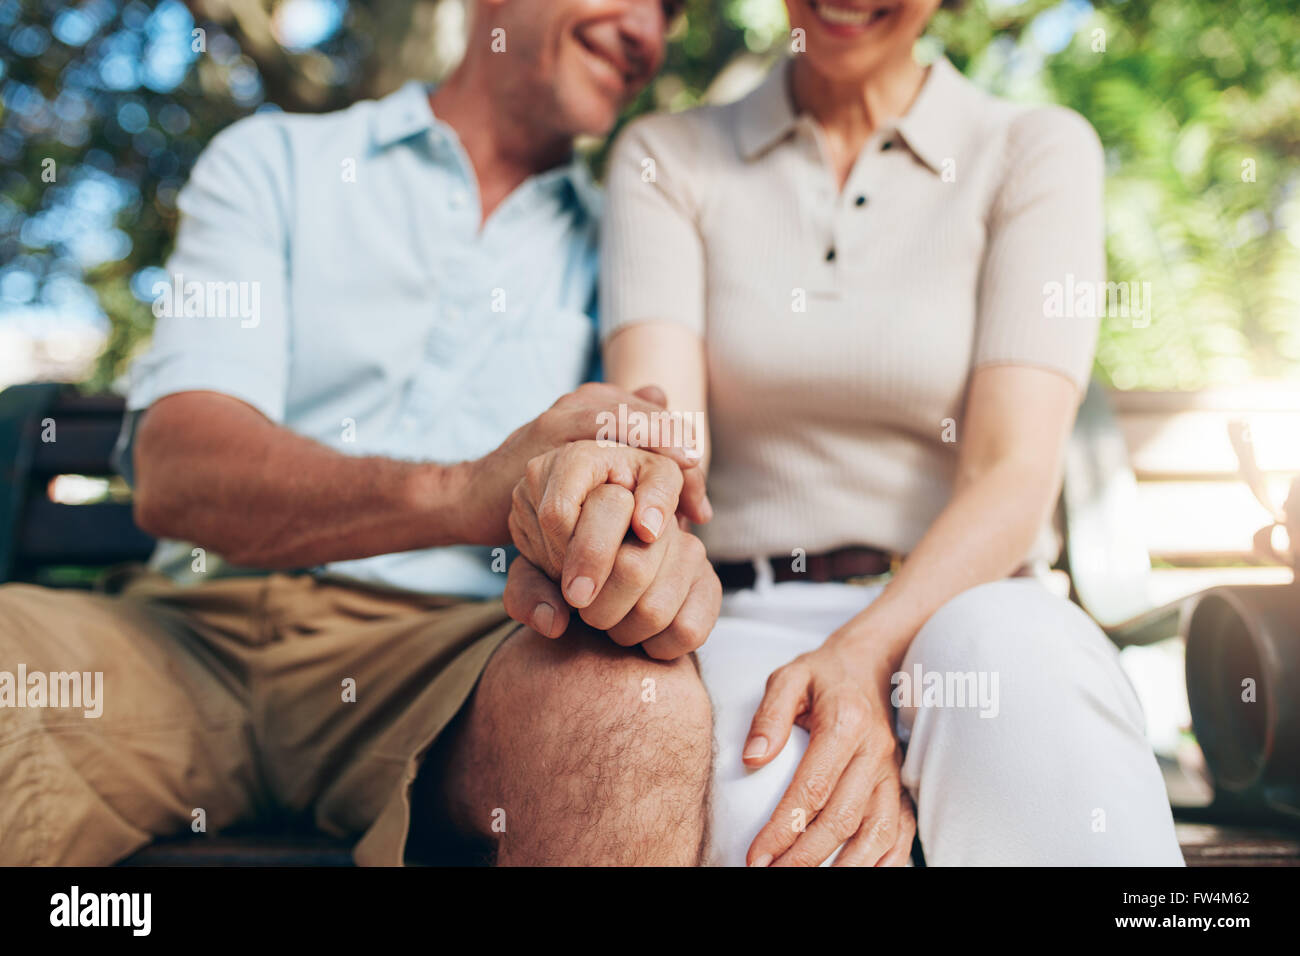 Amorevole coppia senior seduti insieme e tenendo le mani in un parco. Chiudere l'immagine con focus sulle mani. Foto Stock